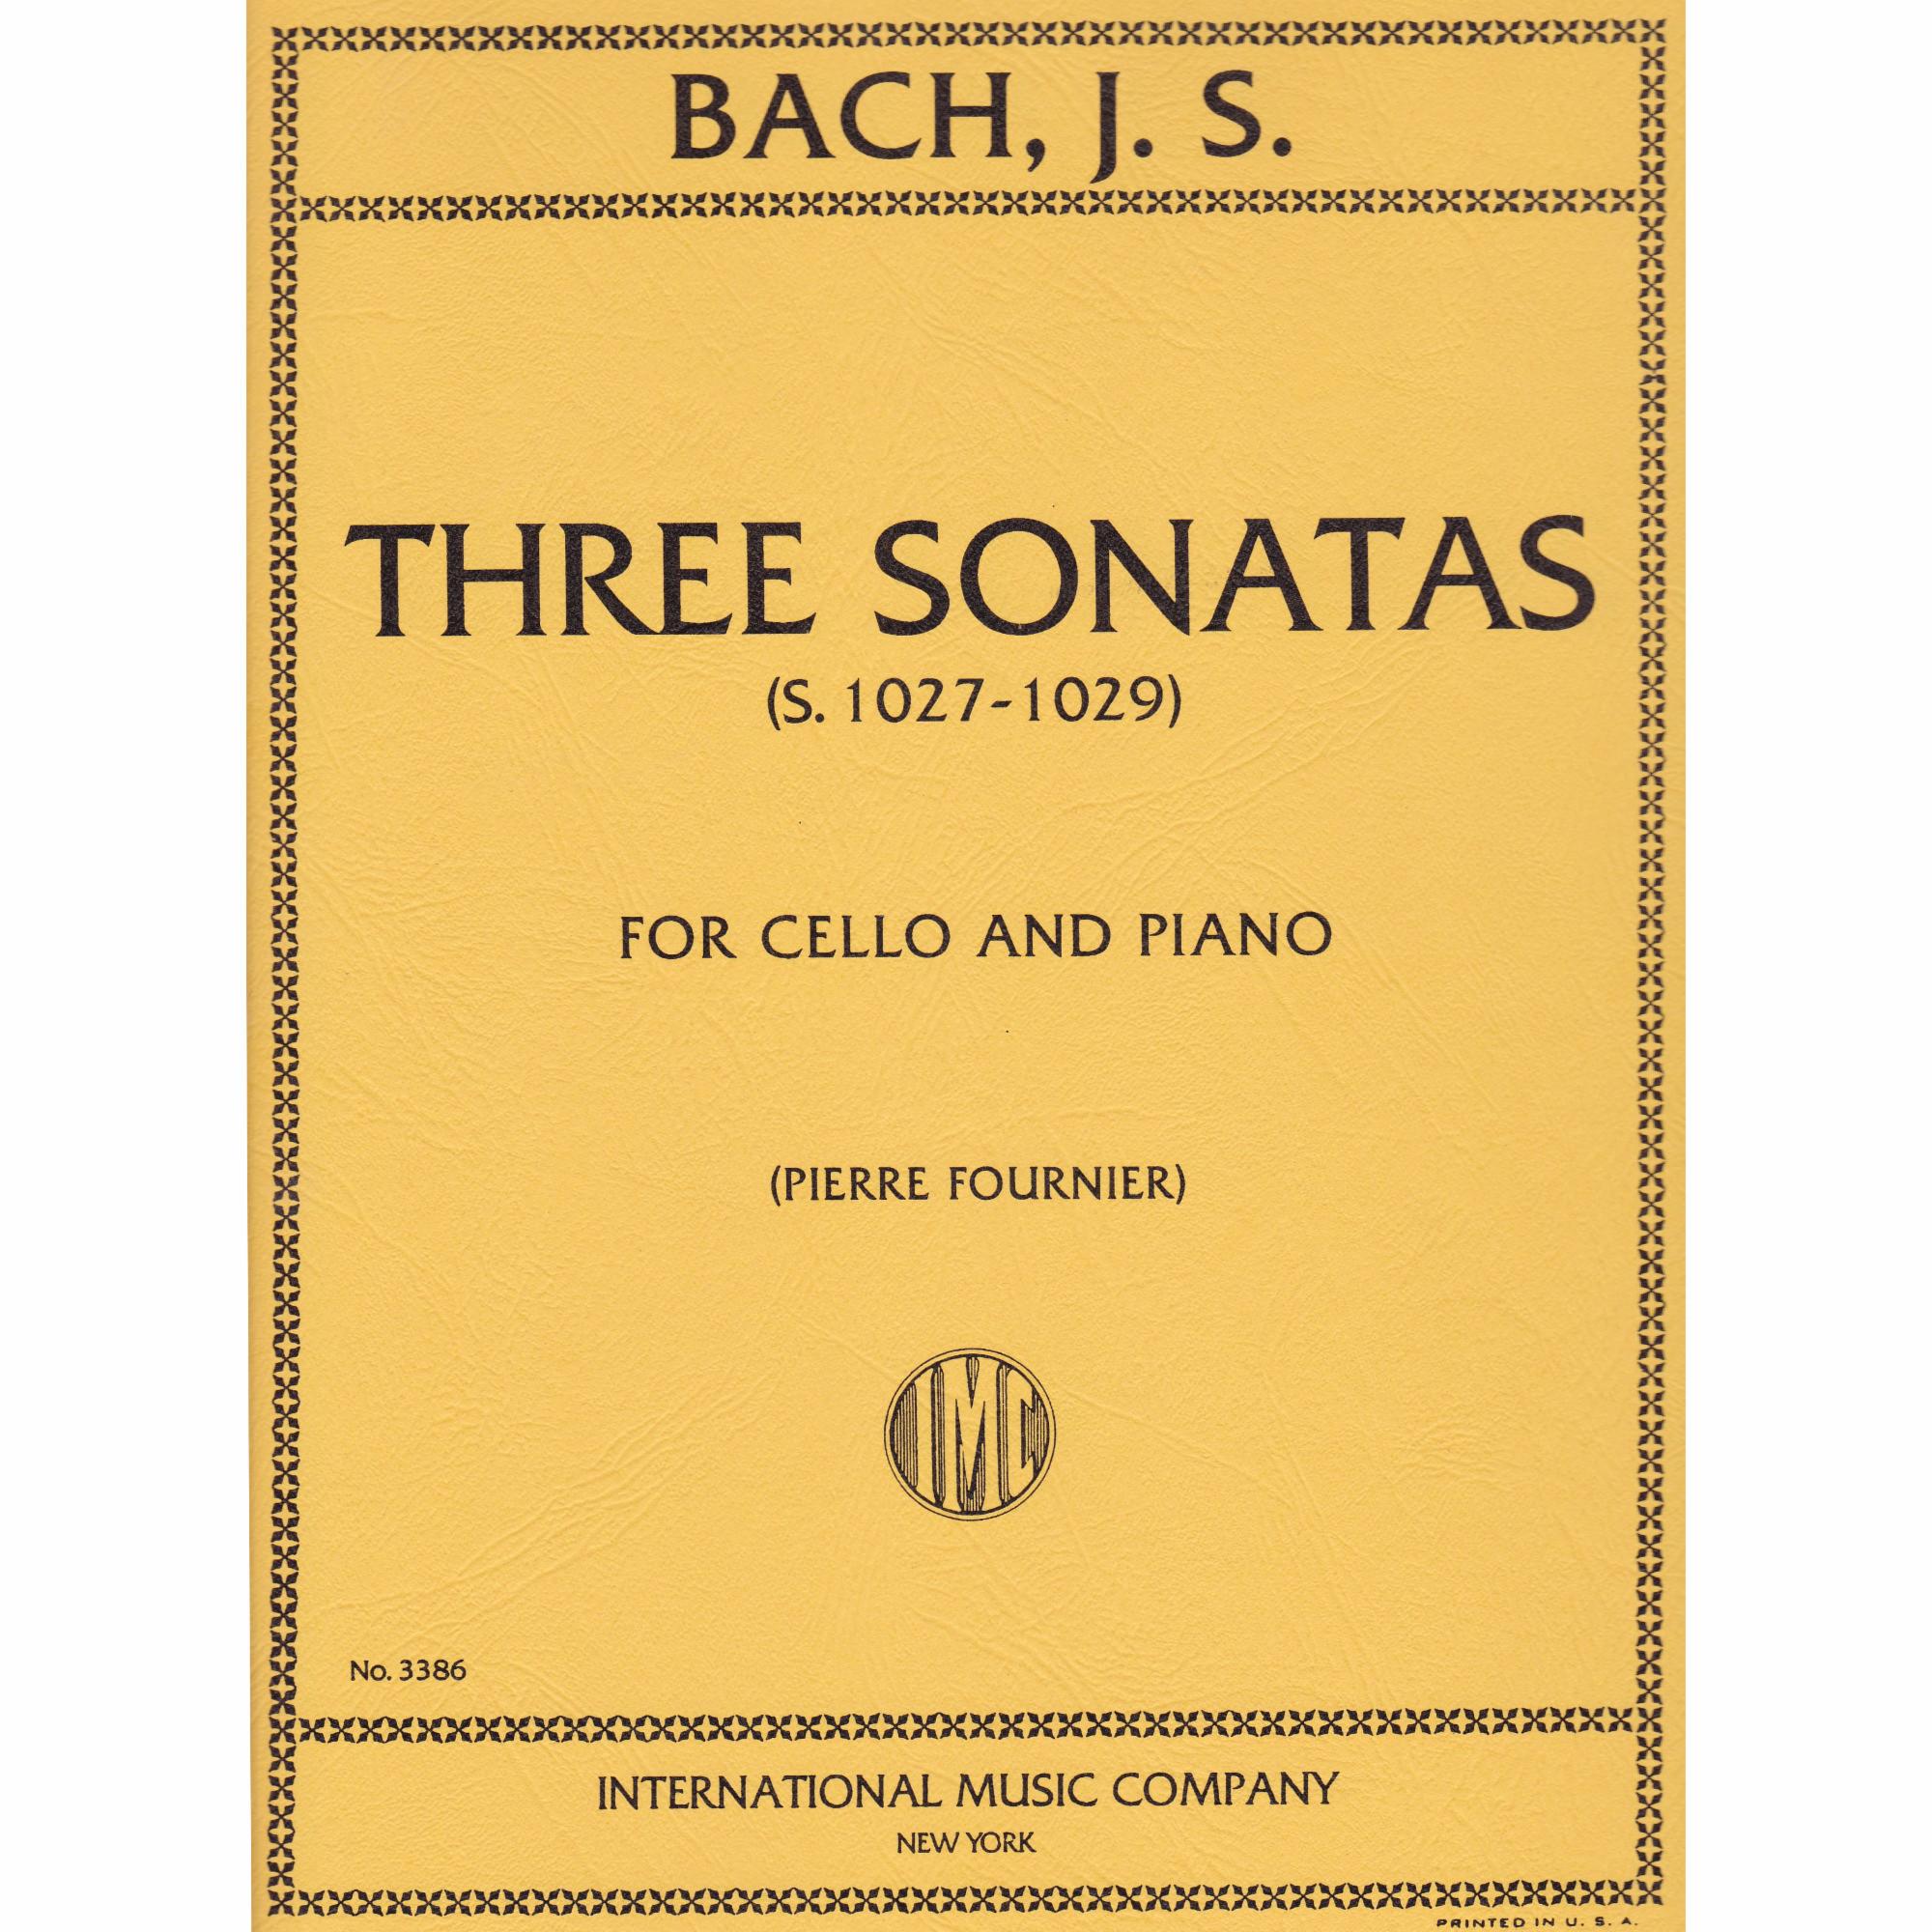 Three Sonatas, BWV 1027-29 for Cello and Piano